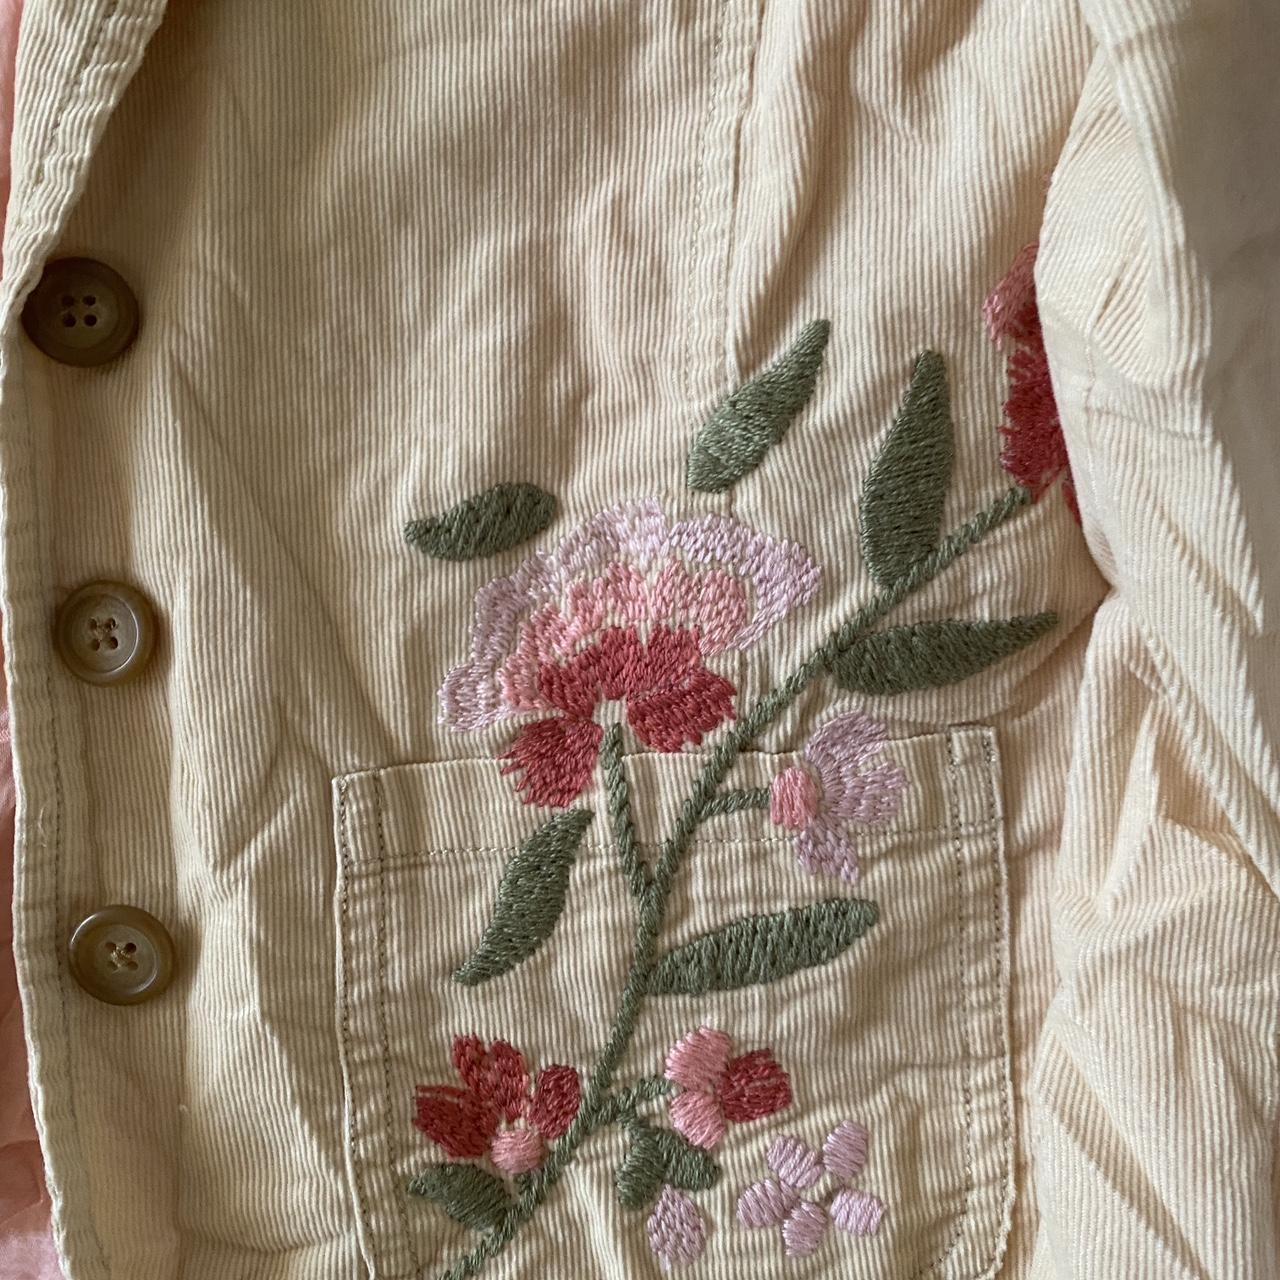 Abercrombie vintage embroidered vest Kids size XL... - Depop